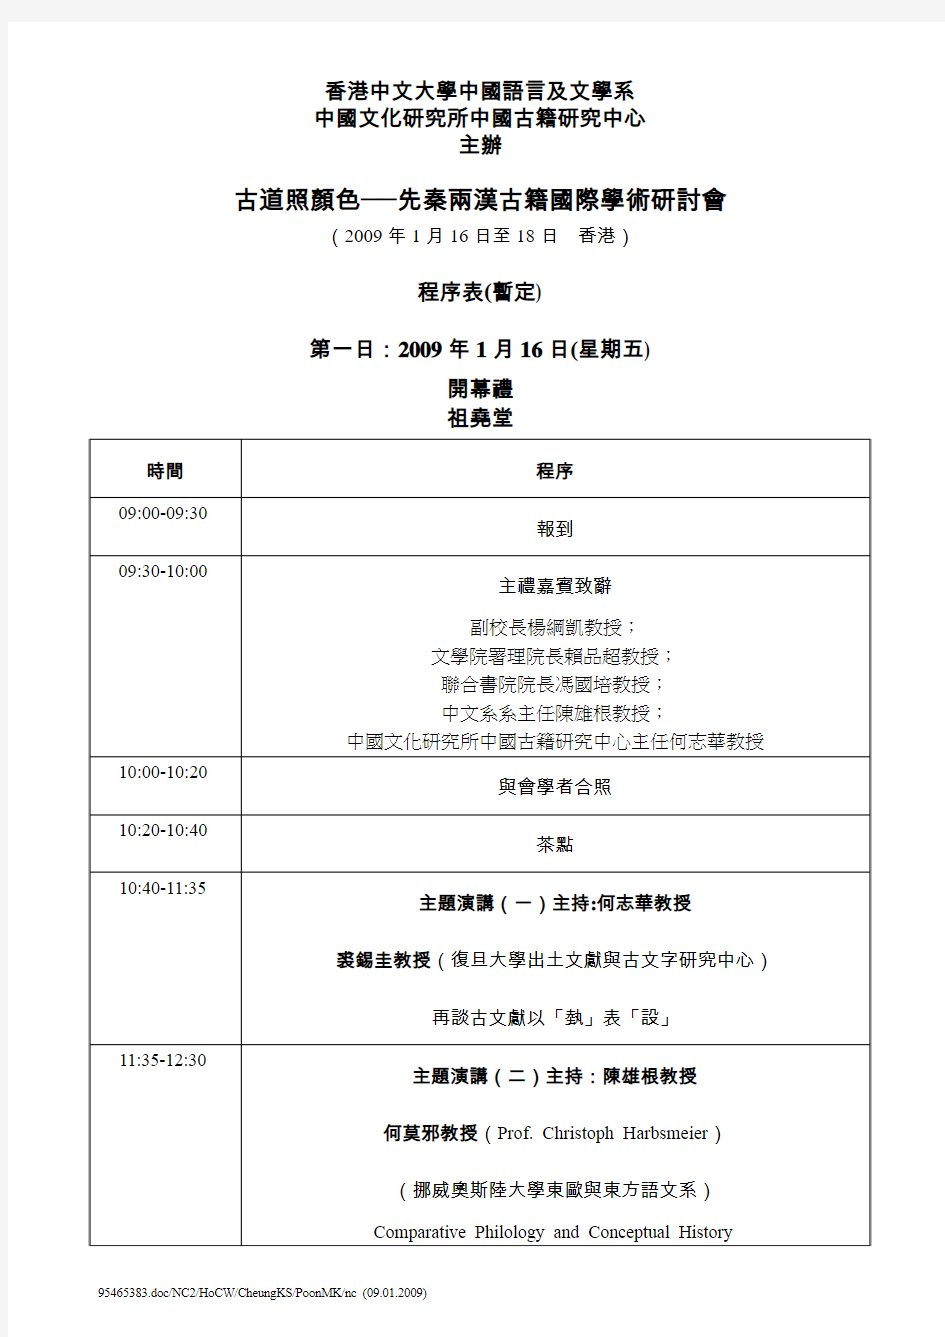 香港中文大学中国语言及文学系